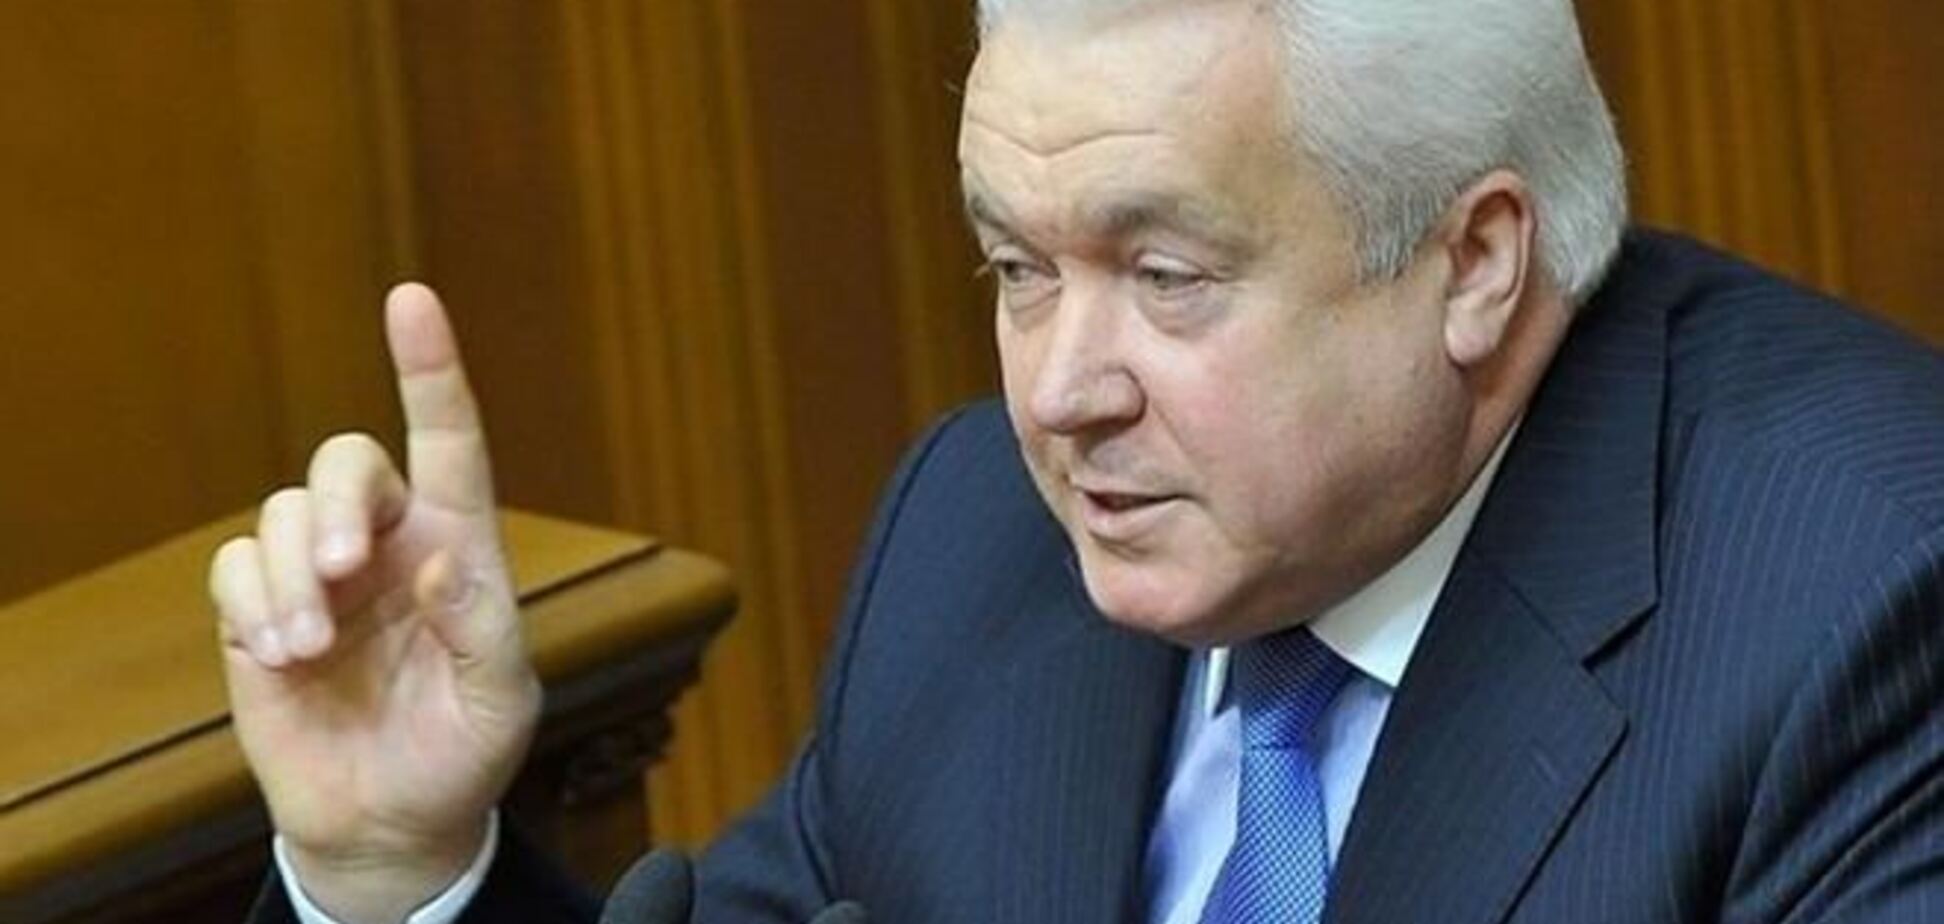 Регионала Олийныка выгнали из парламента за 'доведение людей до крови'